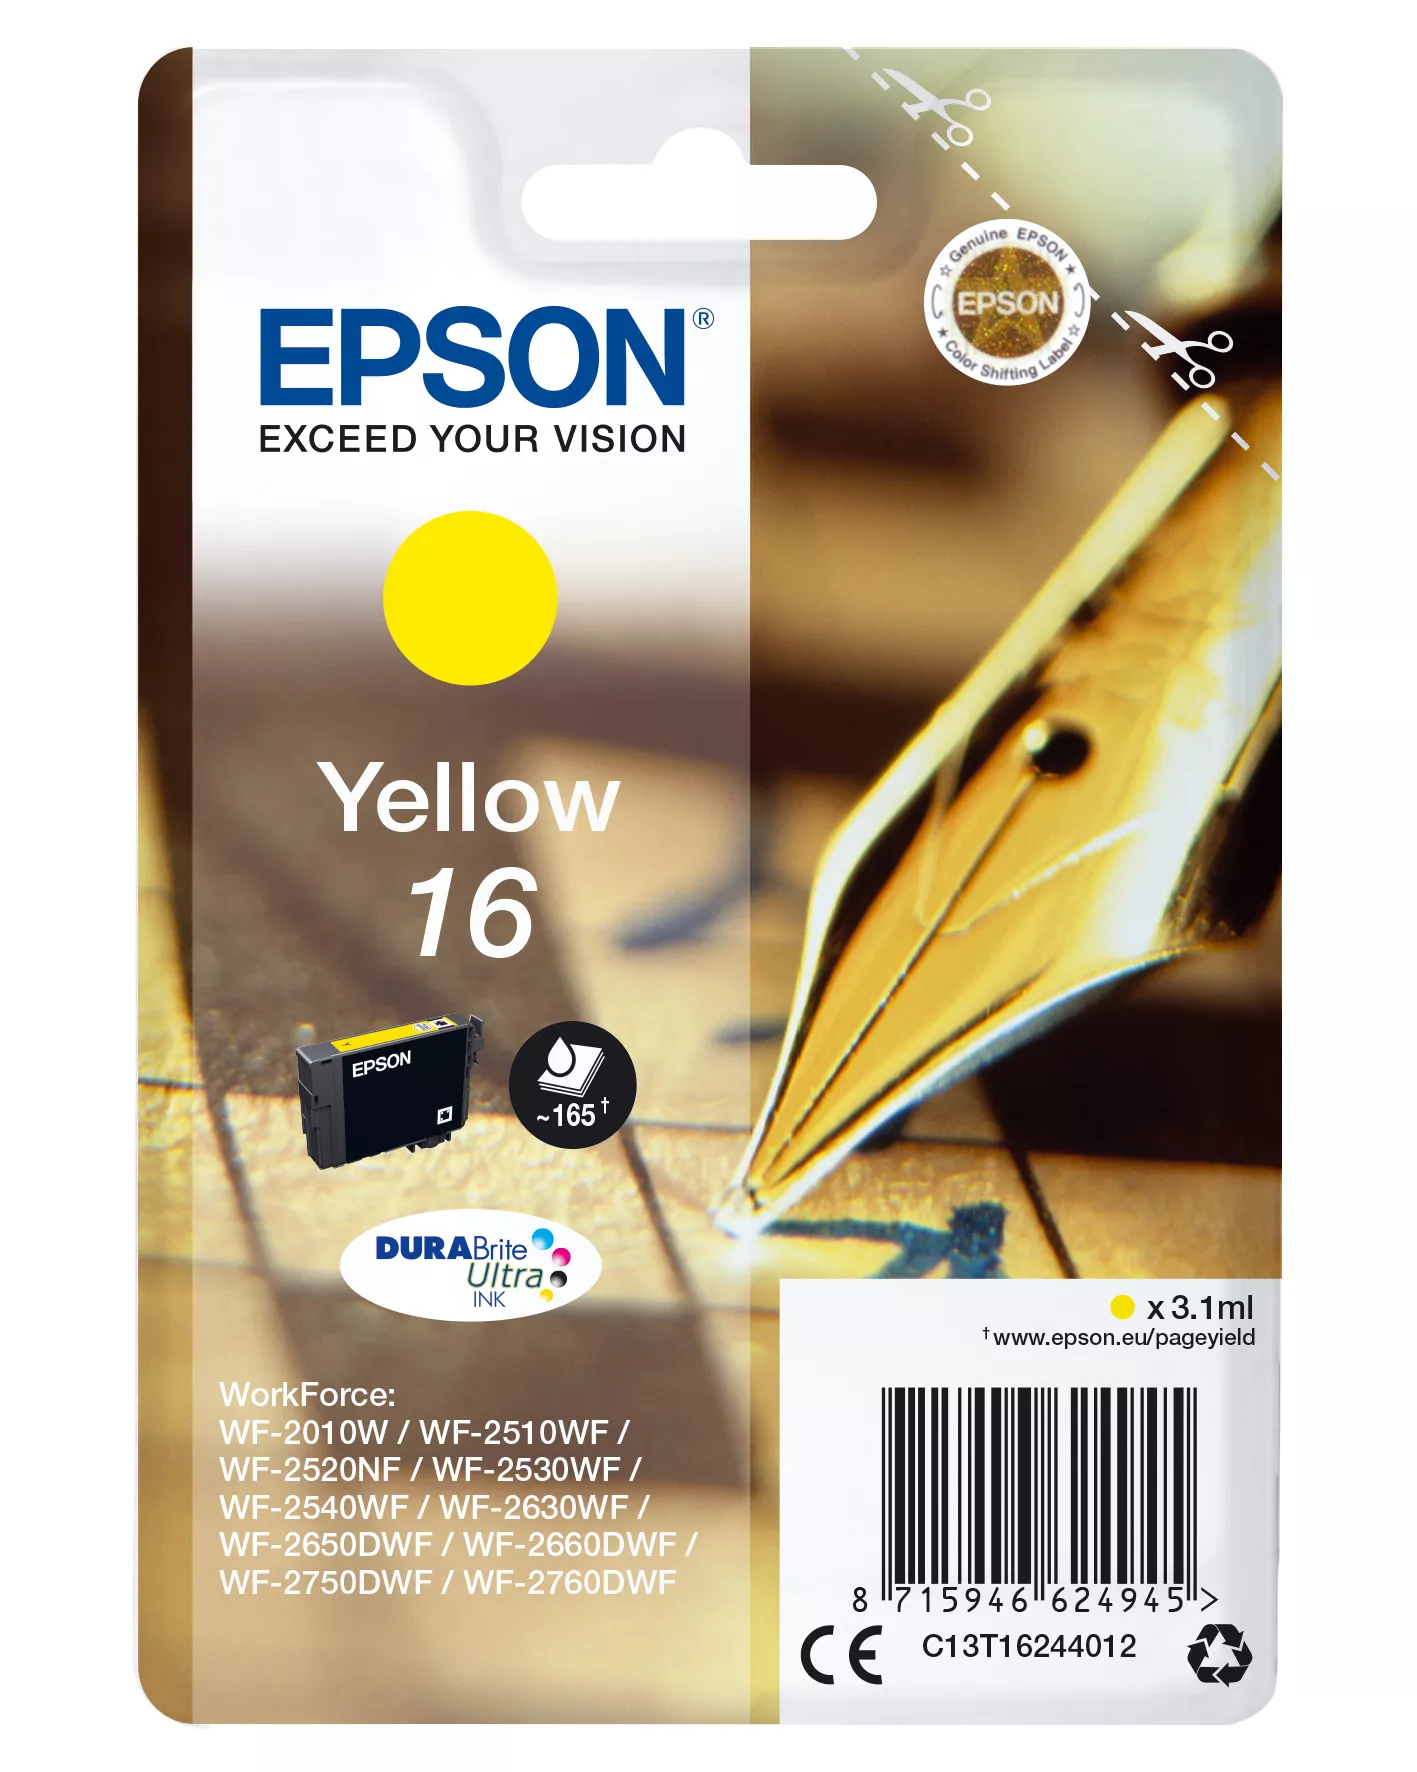 Achat EPSON 16 cartouche dencre jaune capacité standard 3.1ml - 8715946624945